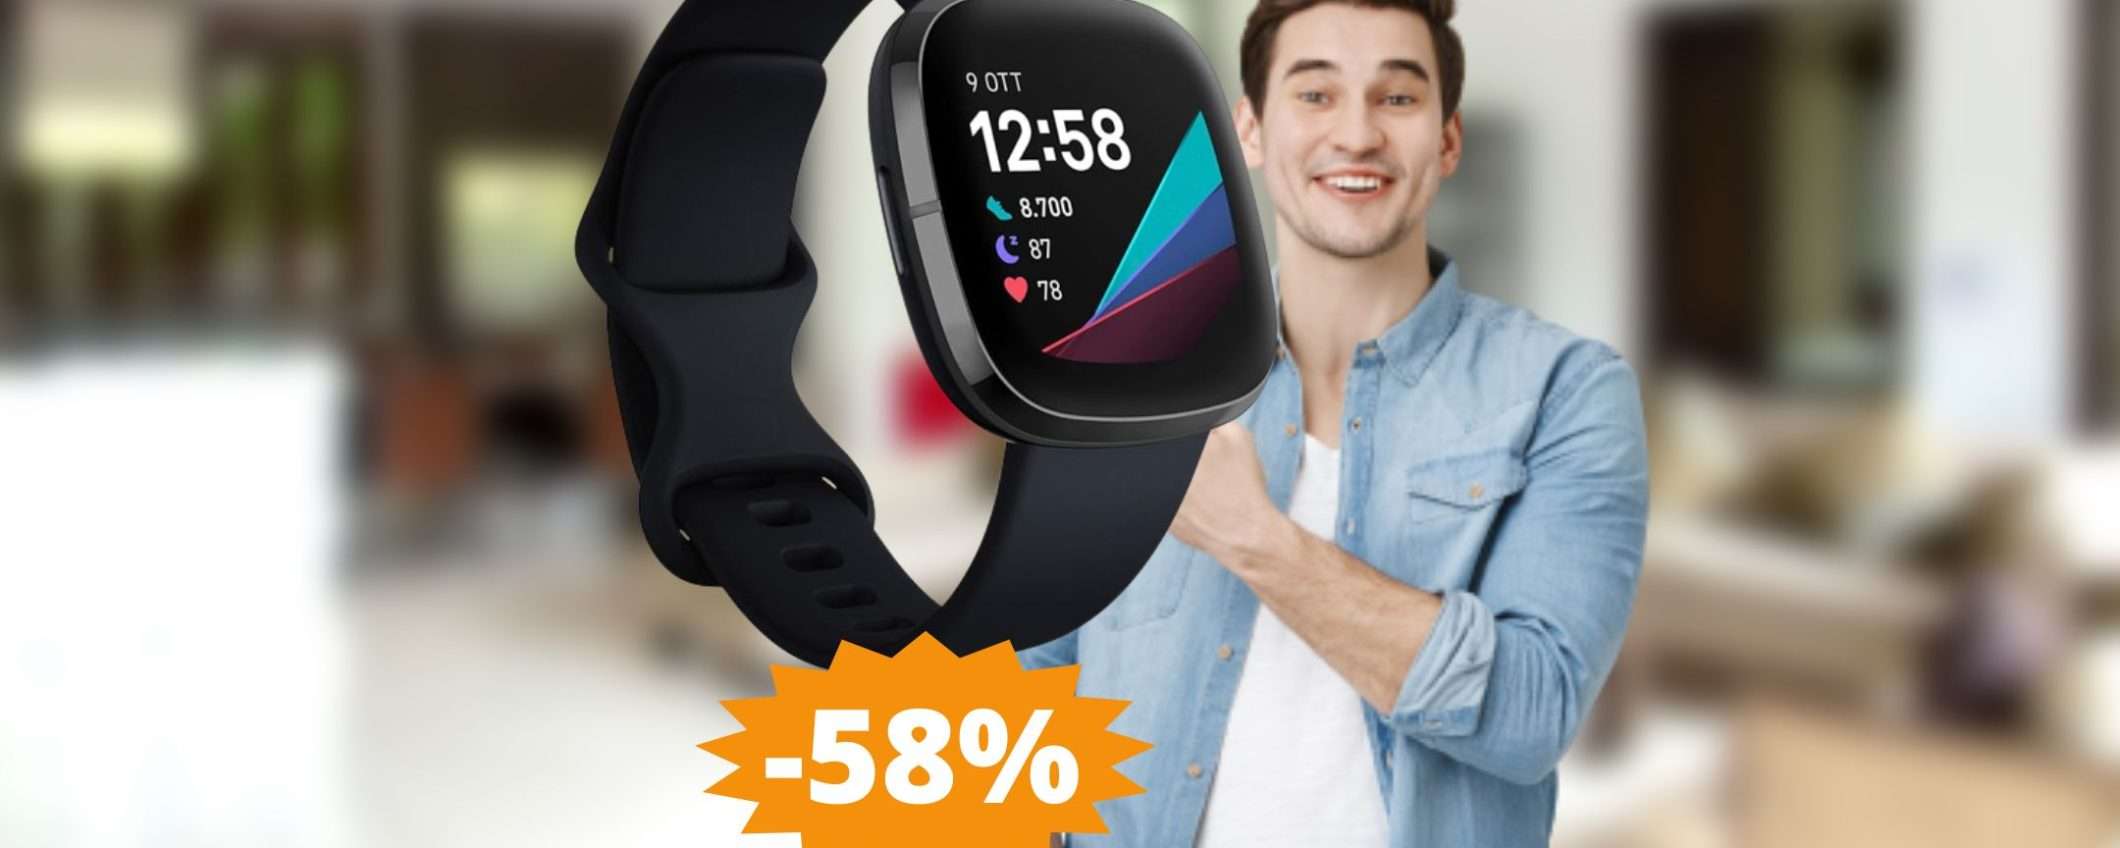 Smartwatch Fitbit Sense: prezzo BOMBA su Amazon (-58%)